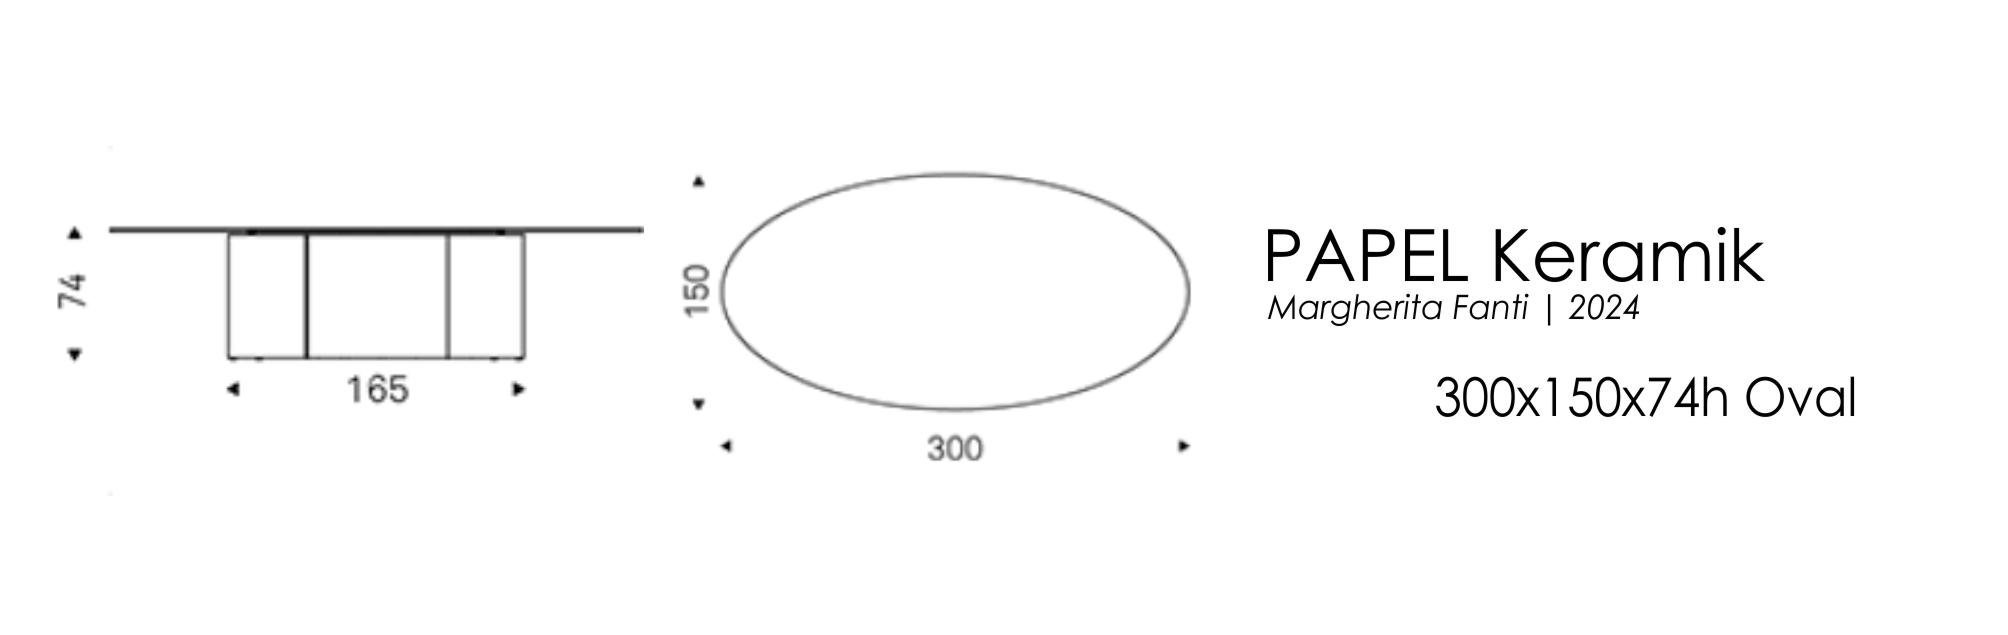 PAPEL - 300x150x74h Oval (керамика)